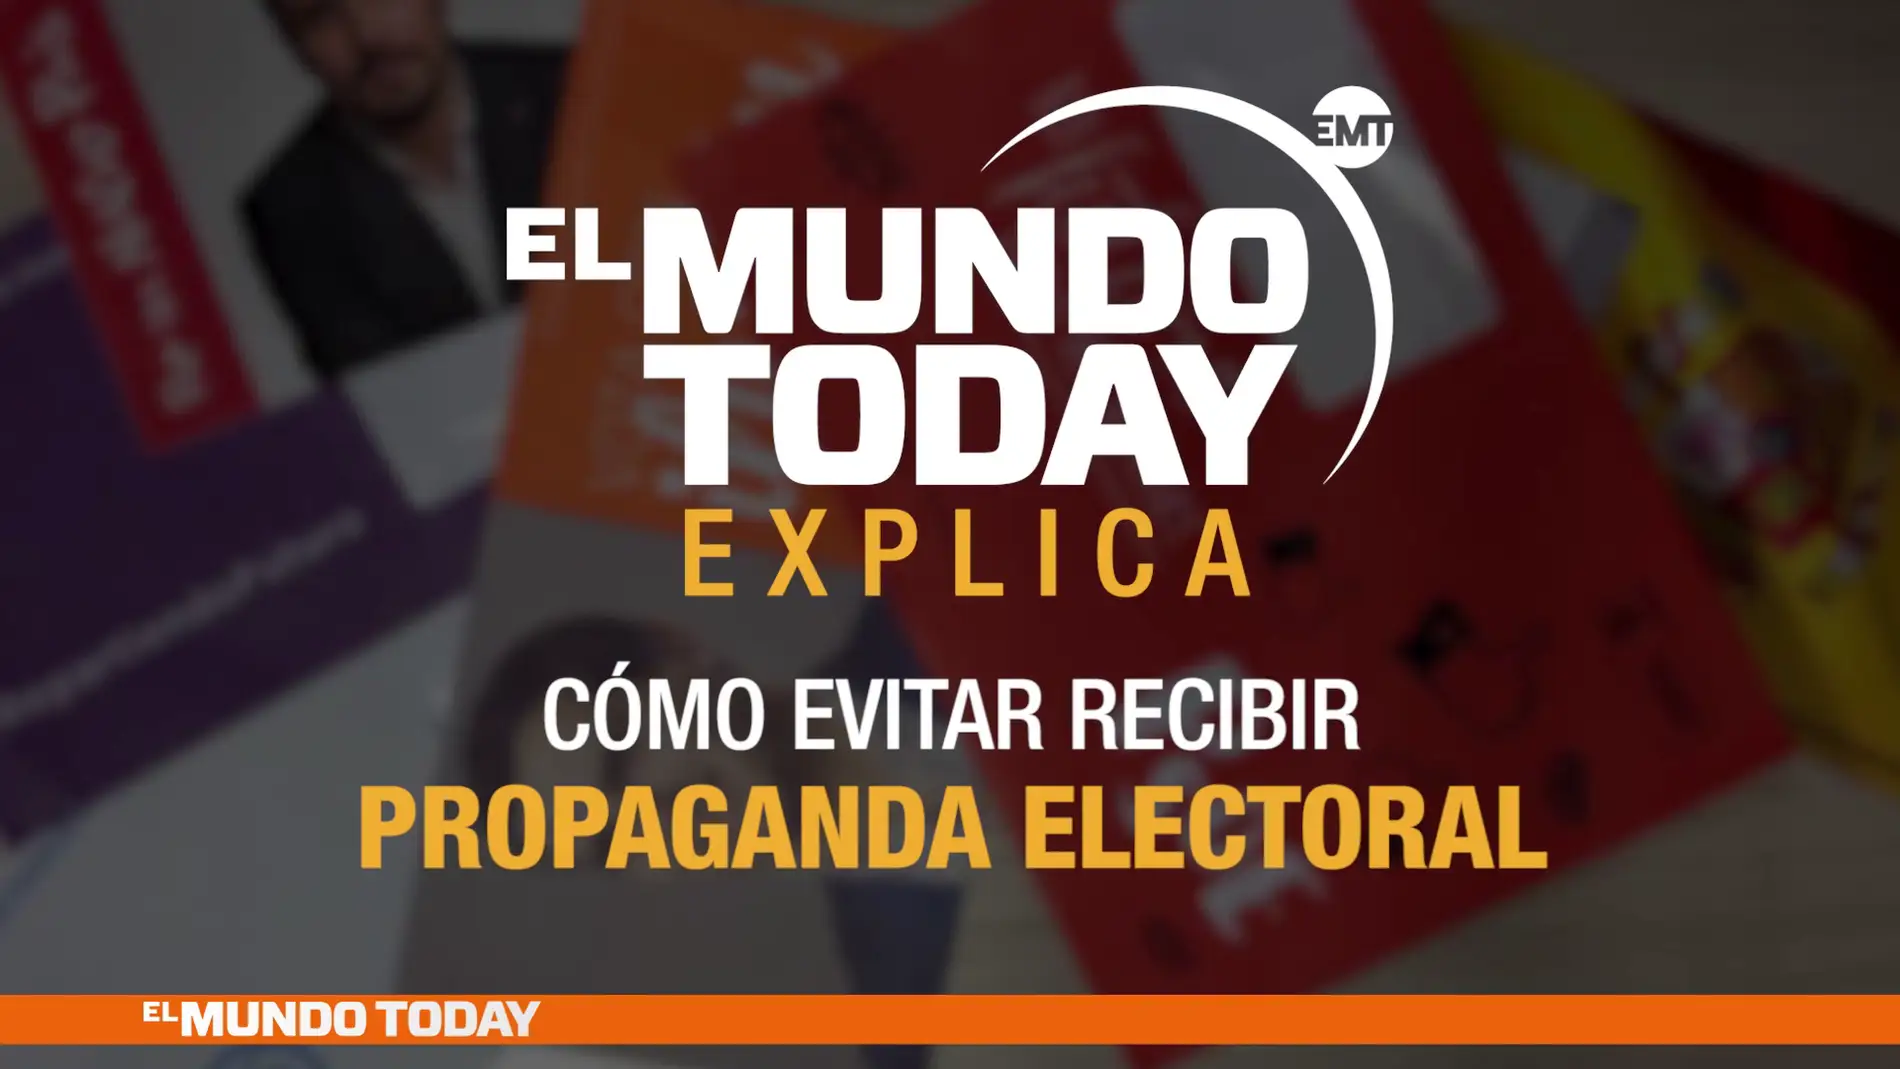 El Mundo Today explica la propaganda electoral